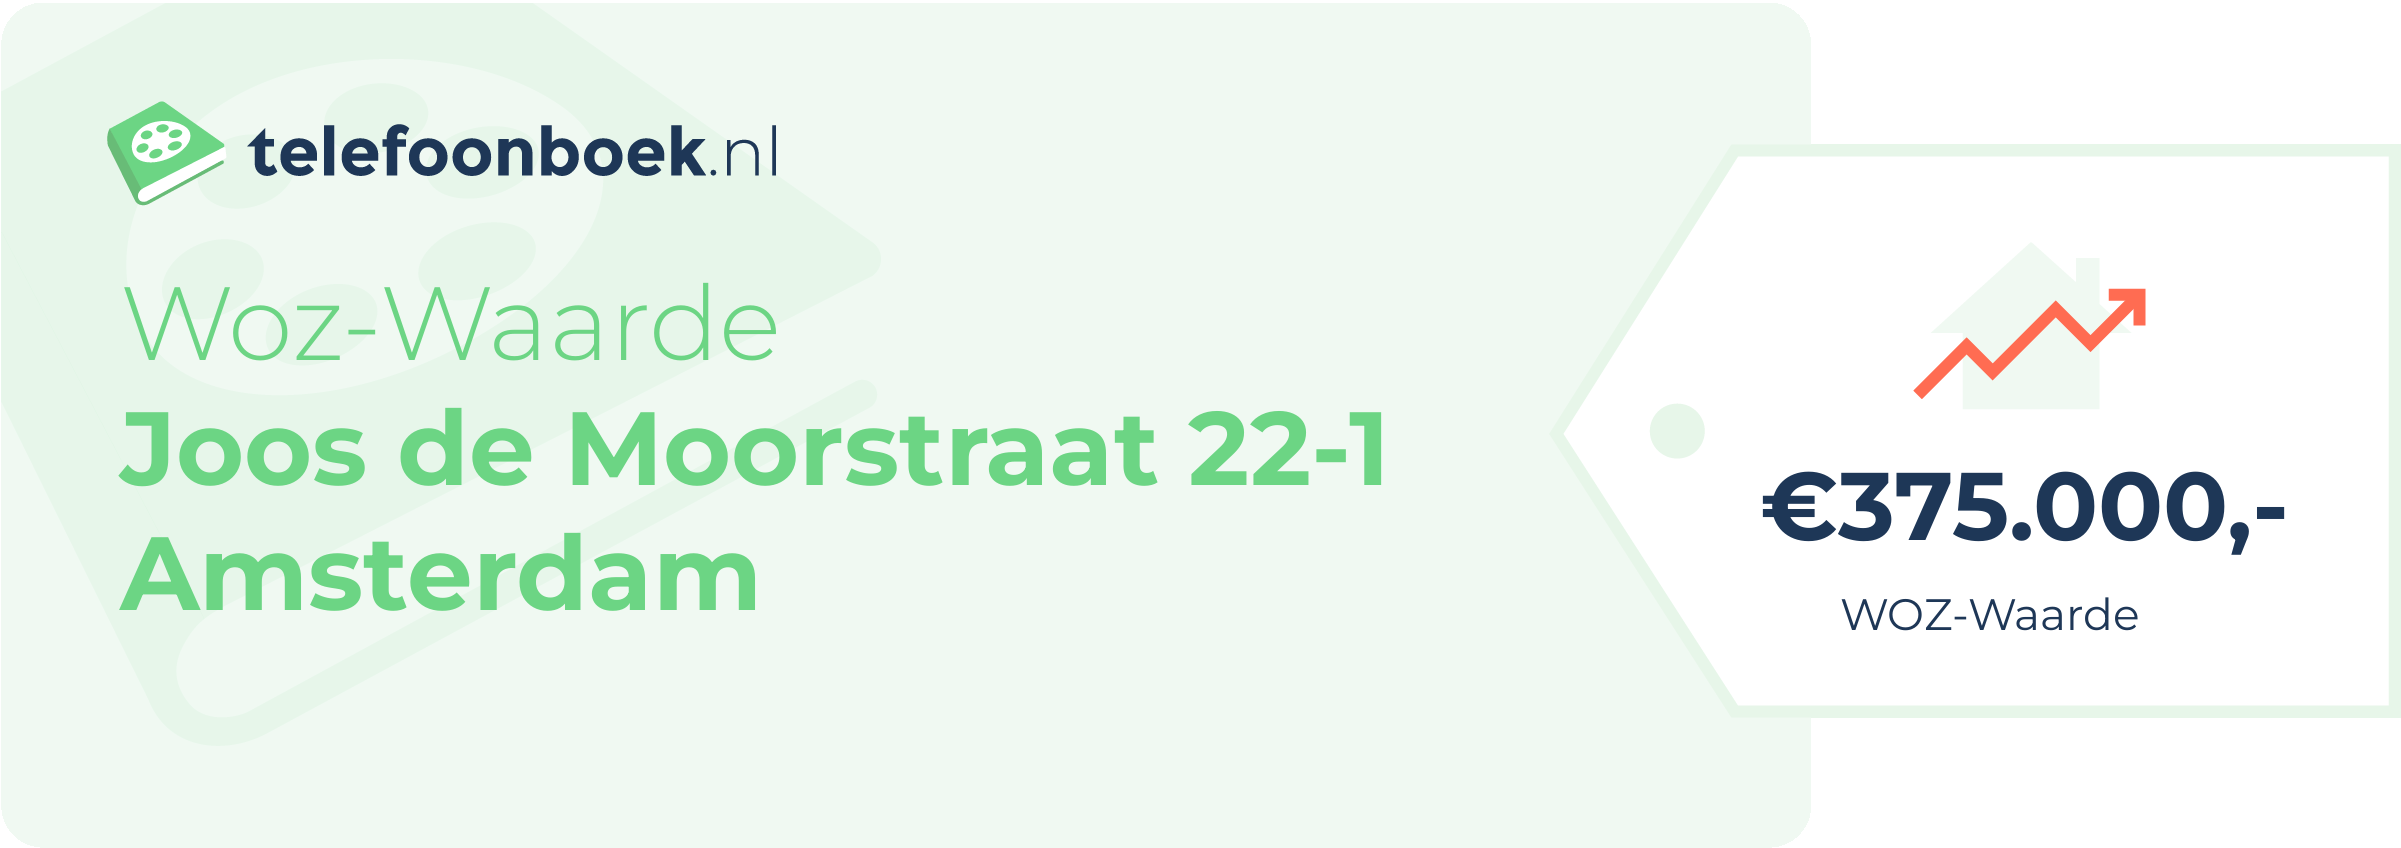 WOZ-waarde Joos De Moorstraat 22-1 Amsterdam